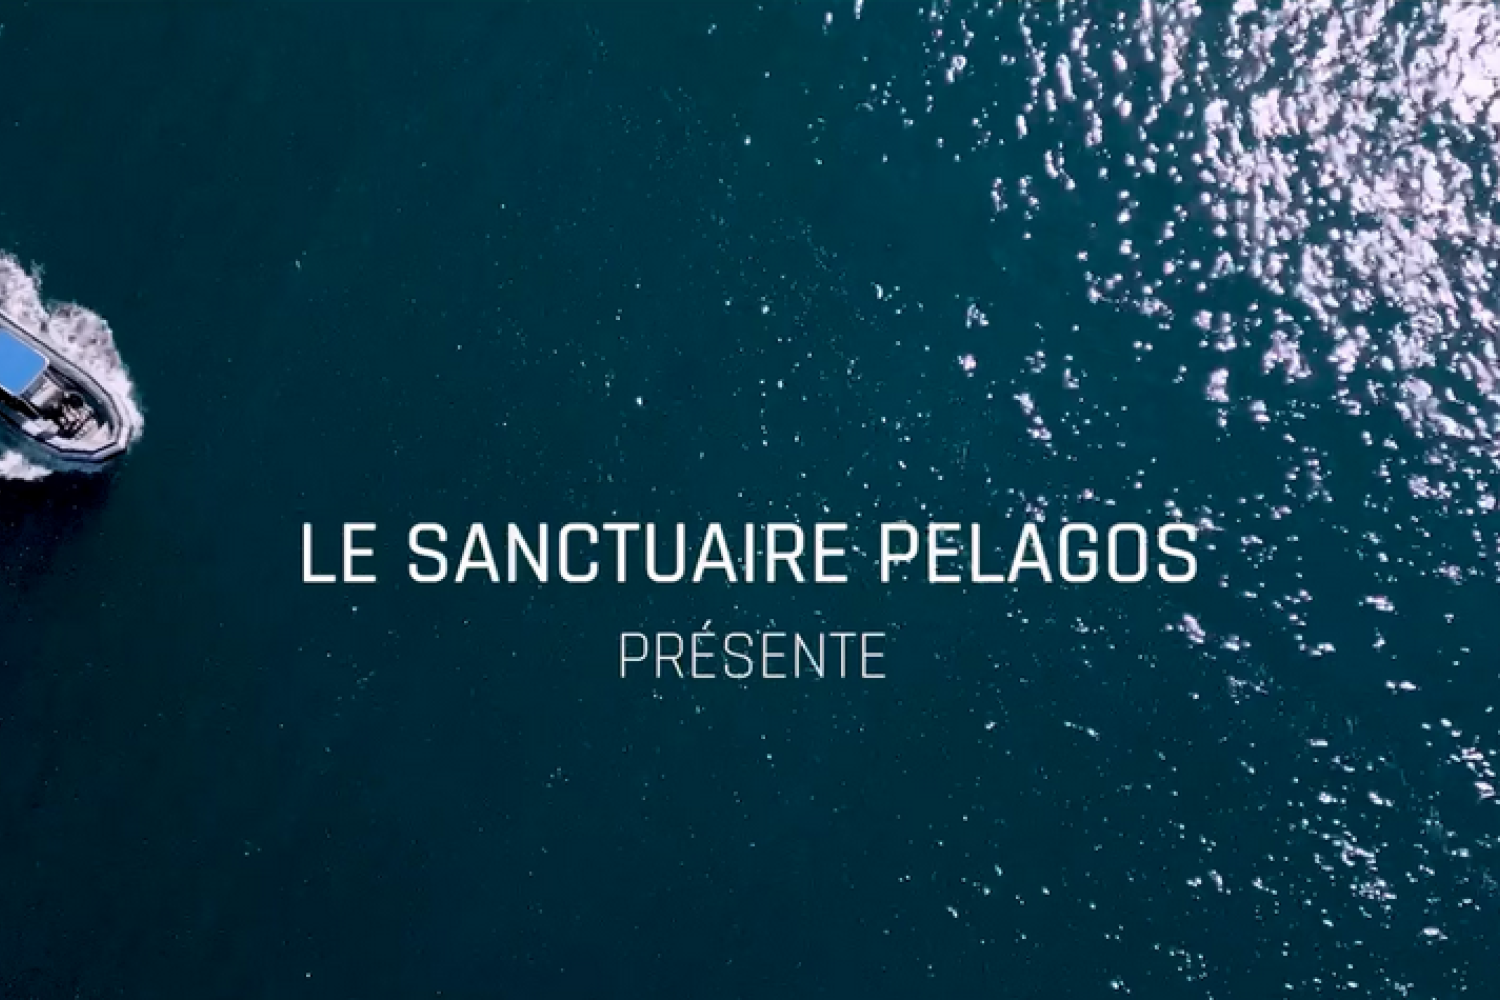 le Sanctuaire Pelagos présente